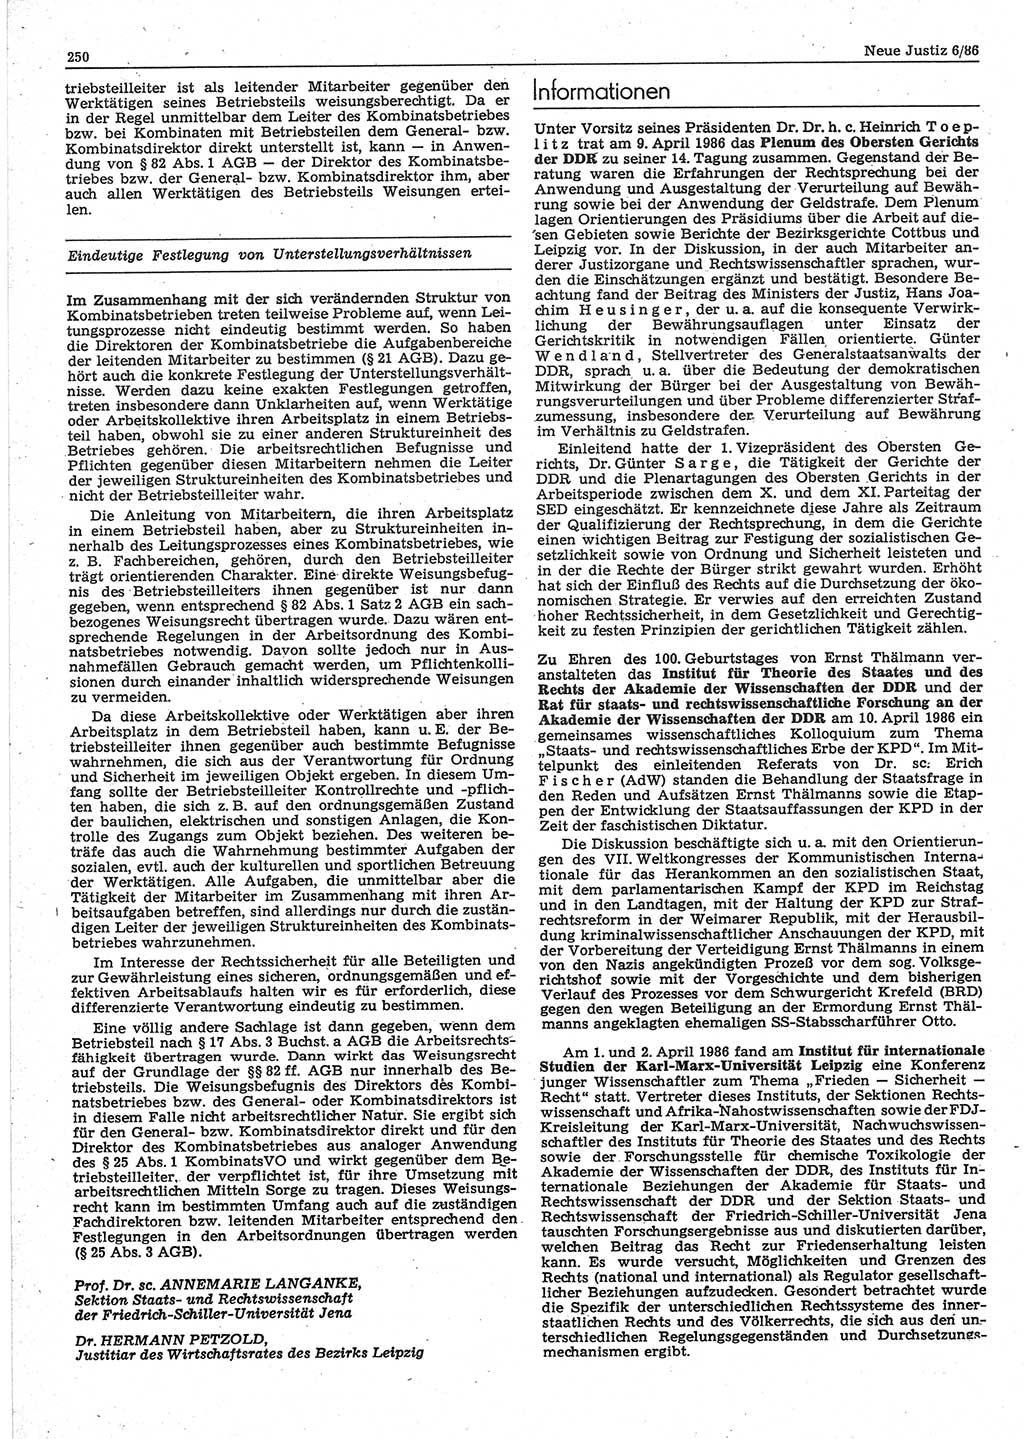 Neue Justiz (NJ), Zeitschrift für sozialistisches Recht und Gesetzlichkeit [Deutsche Demokratische Republik (DDR)], 40. Jahrgang 1986, Seite 250 (NJ DDR 1986, S. 250)